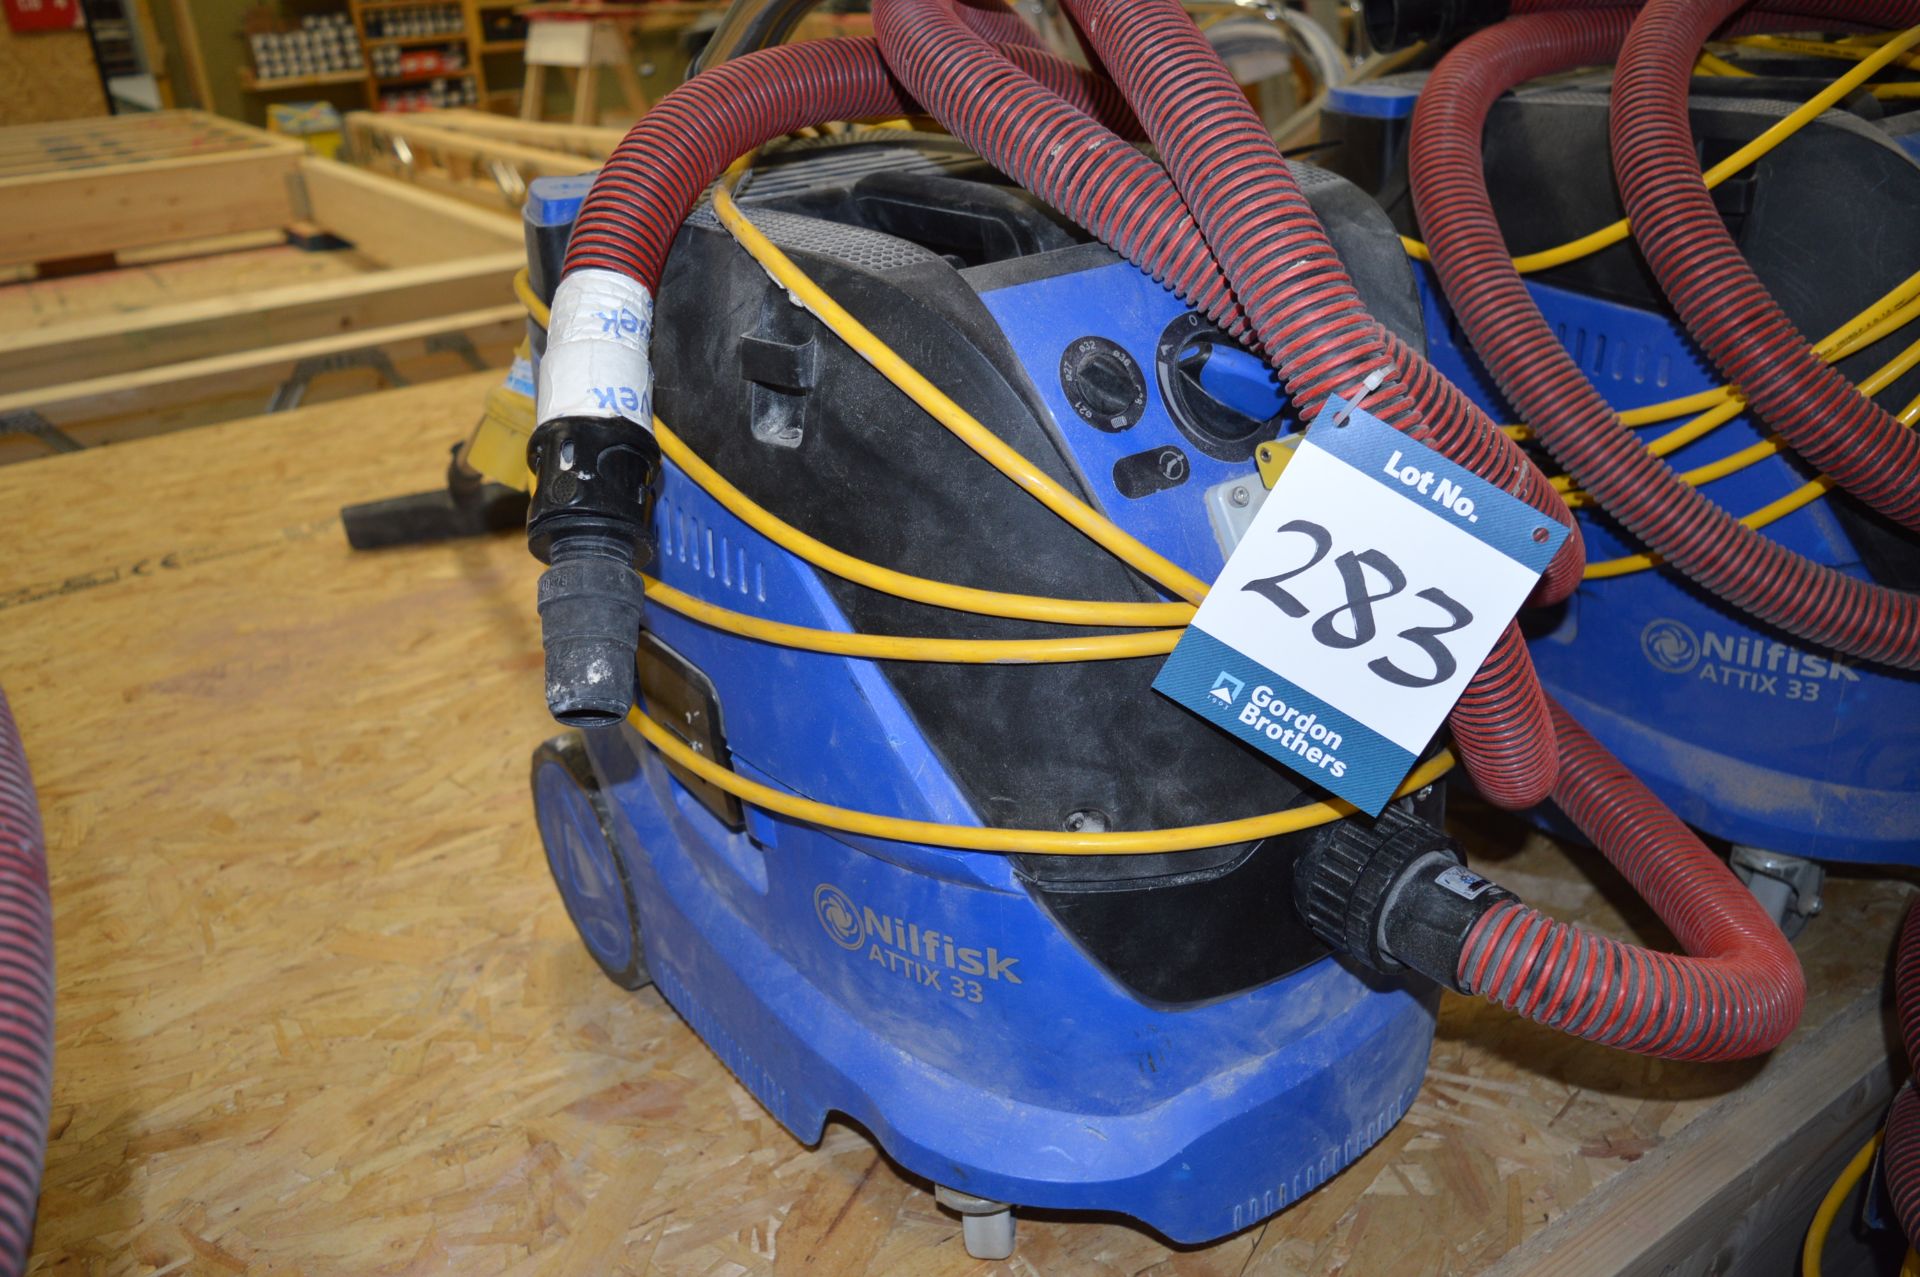 Nilfisk, vacuum cleaner, Model Attix33, 110v